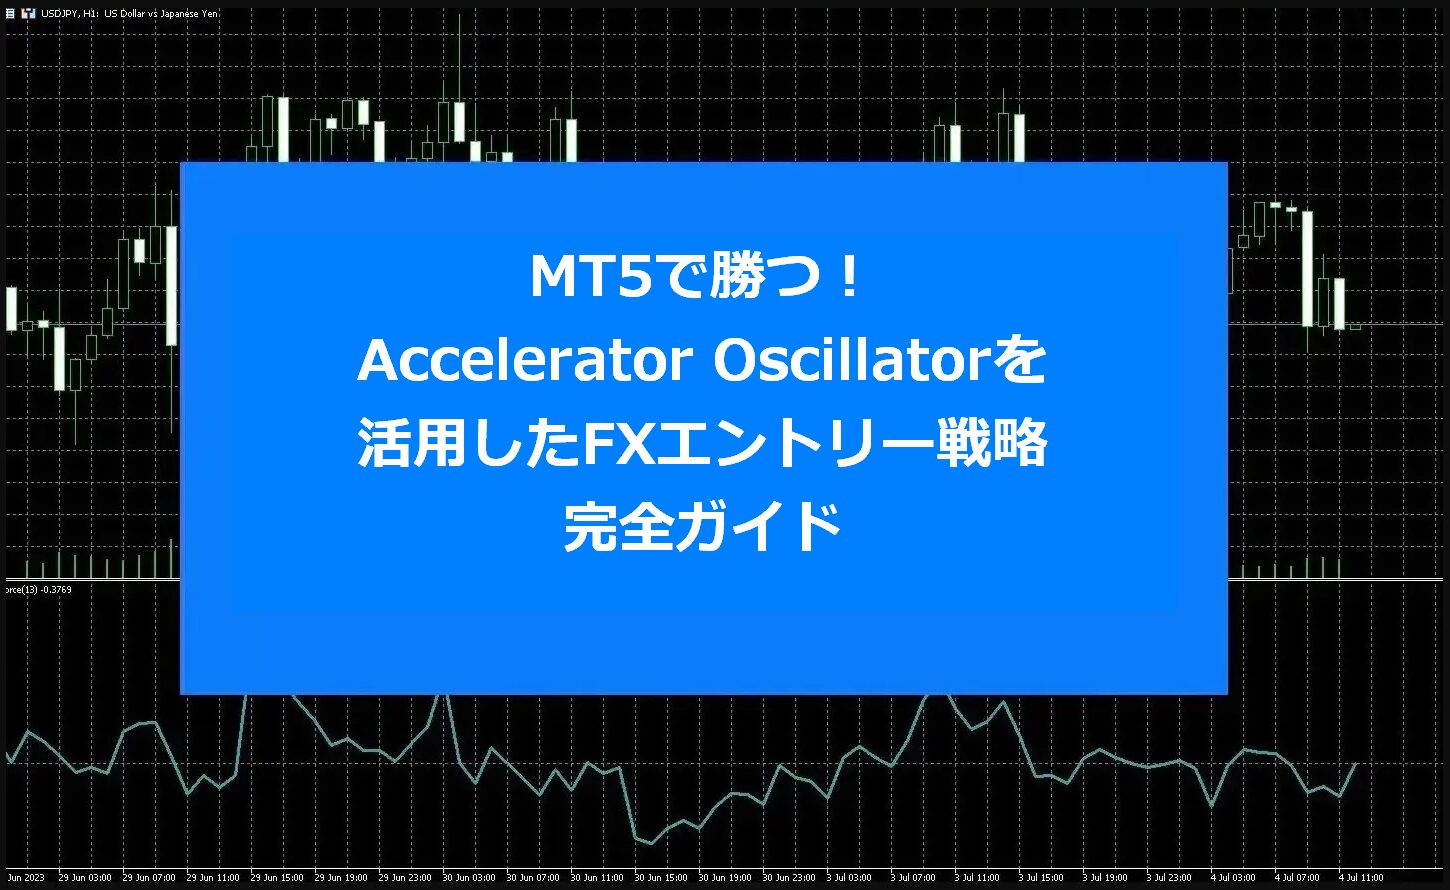 MT5で勝つ！Accelerator Oscillatorを活用したFXエントリー戦略完全ガイド